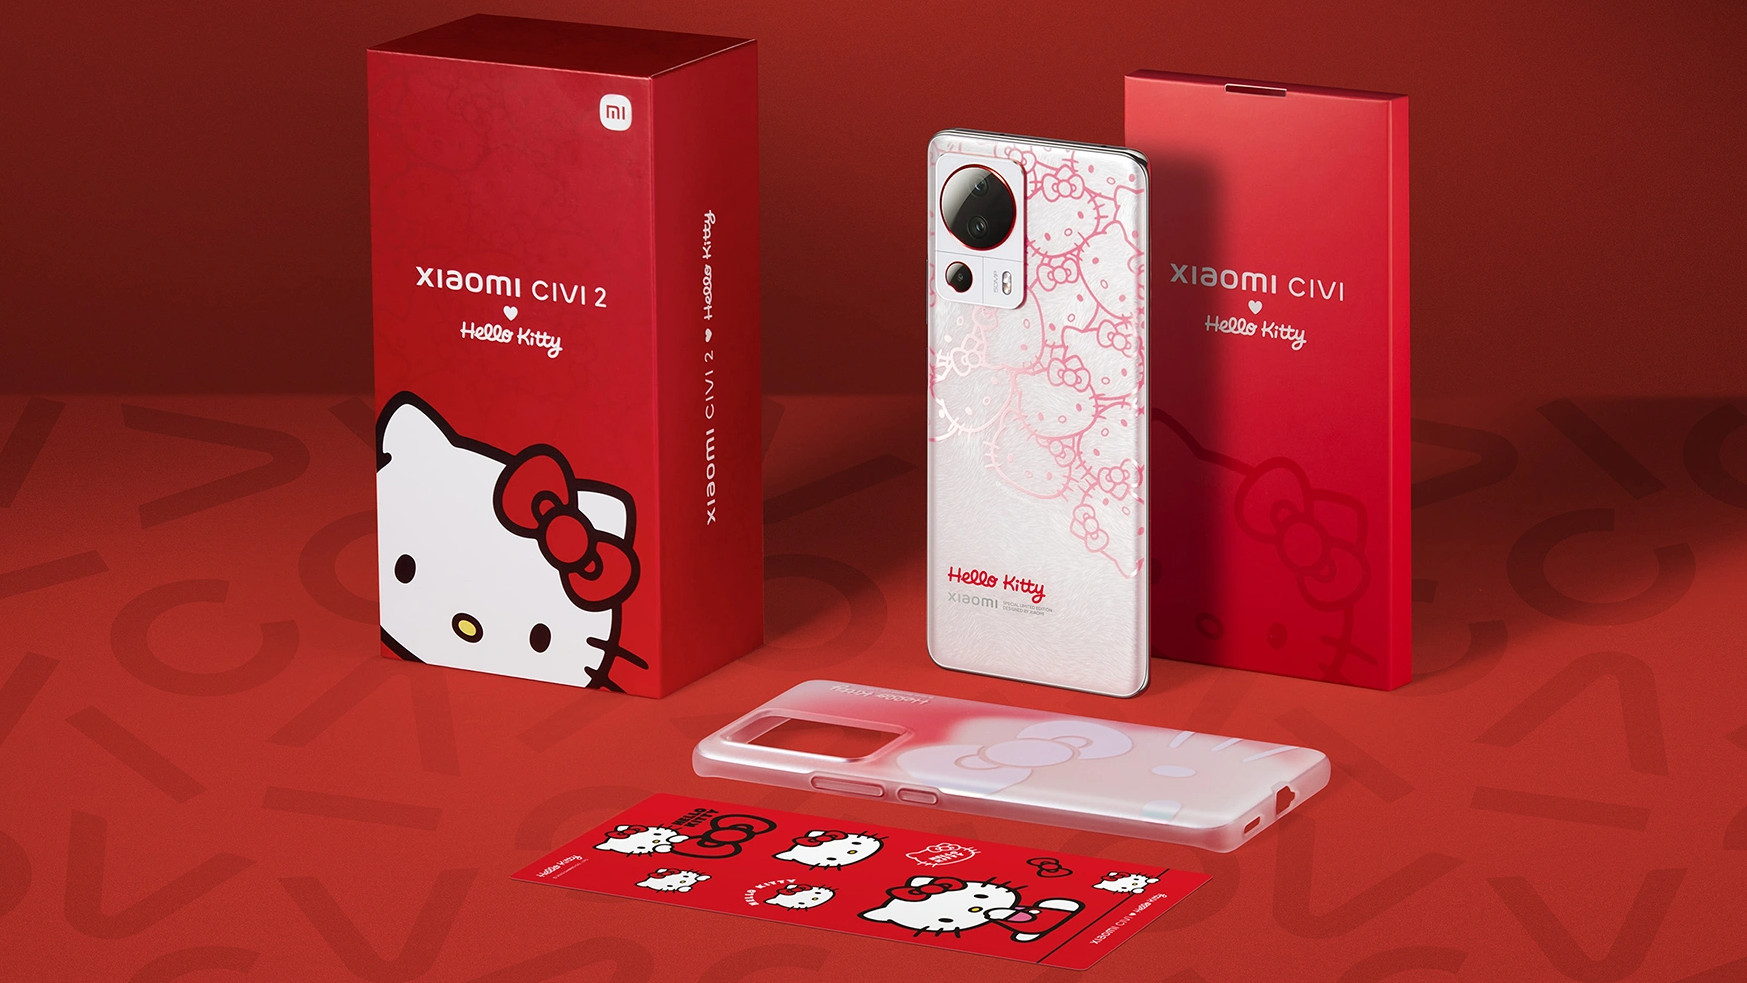 Xiaomi Civi 2 Hello Kitty Edition